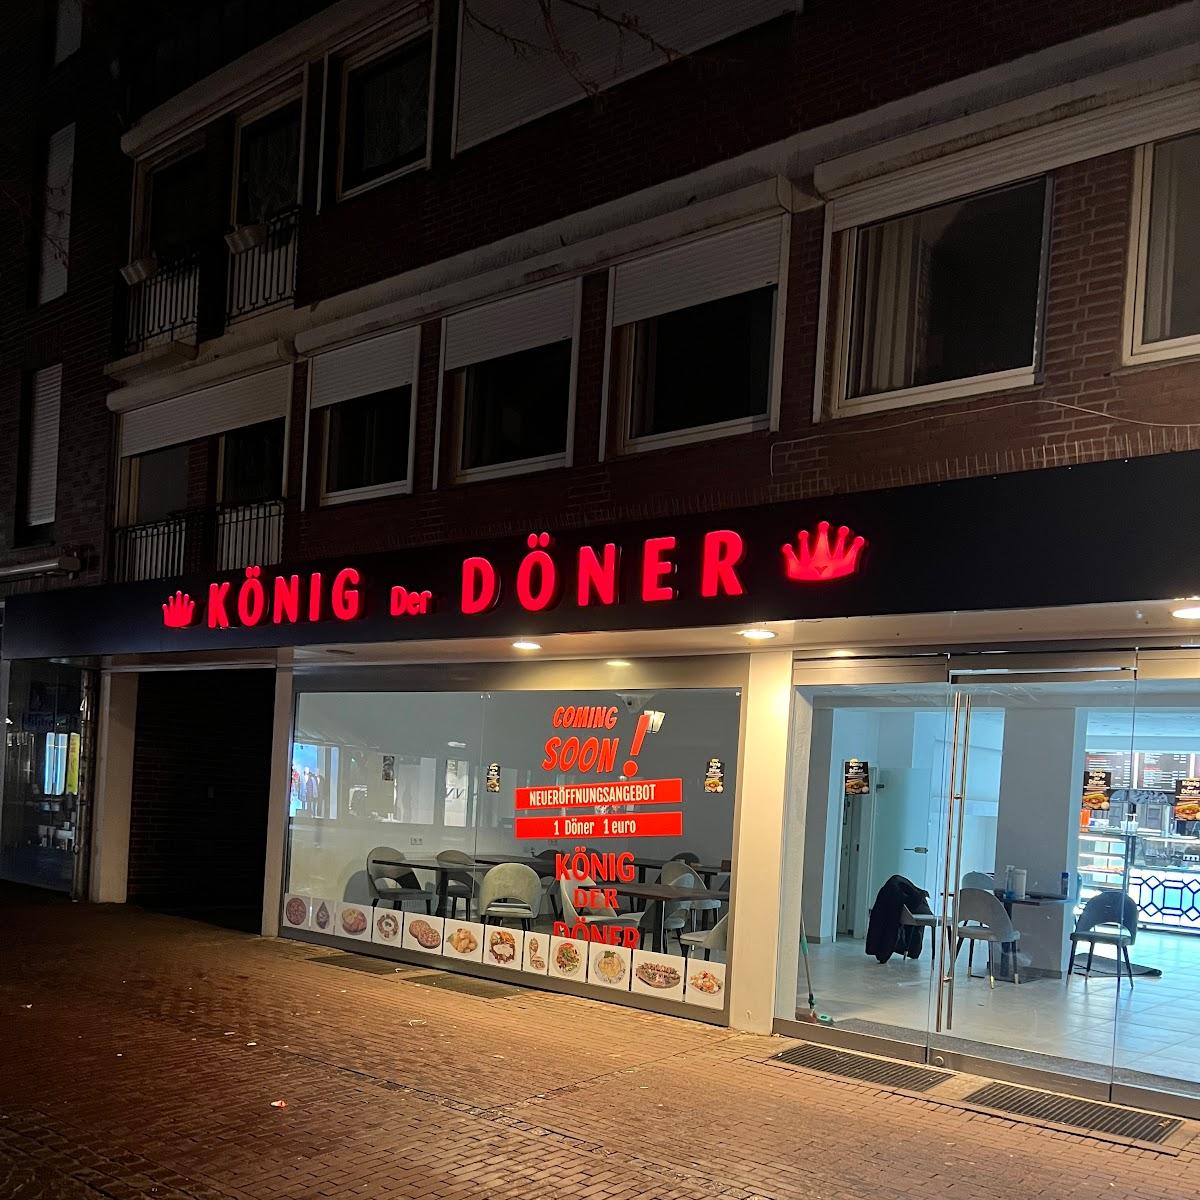 Restaurant "König der Döner" in Goch